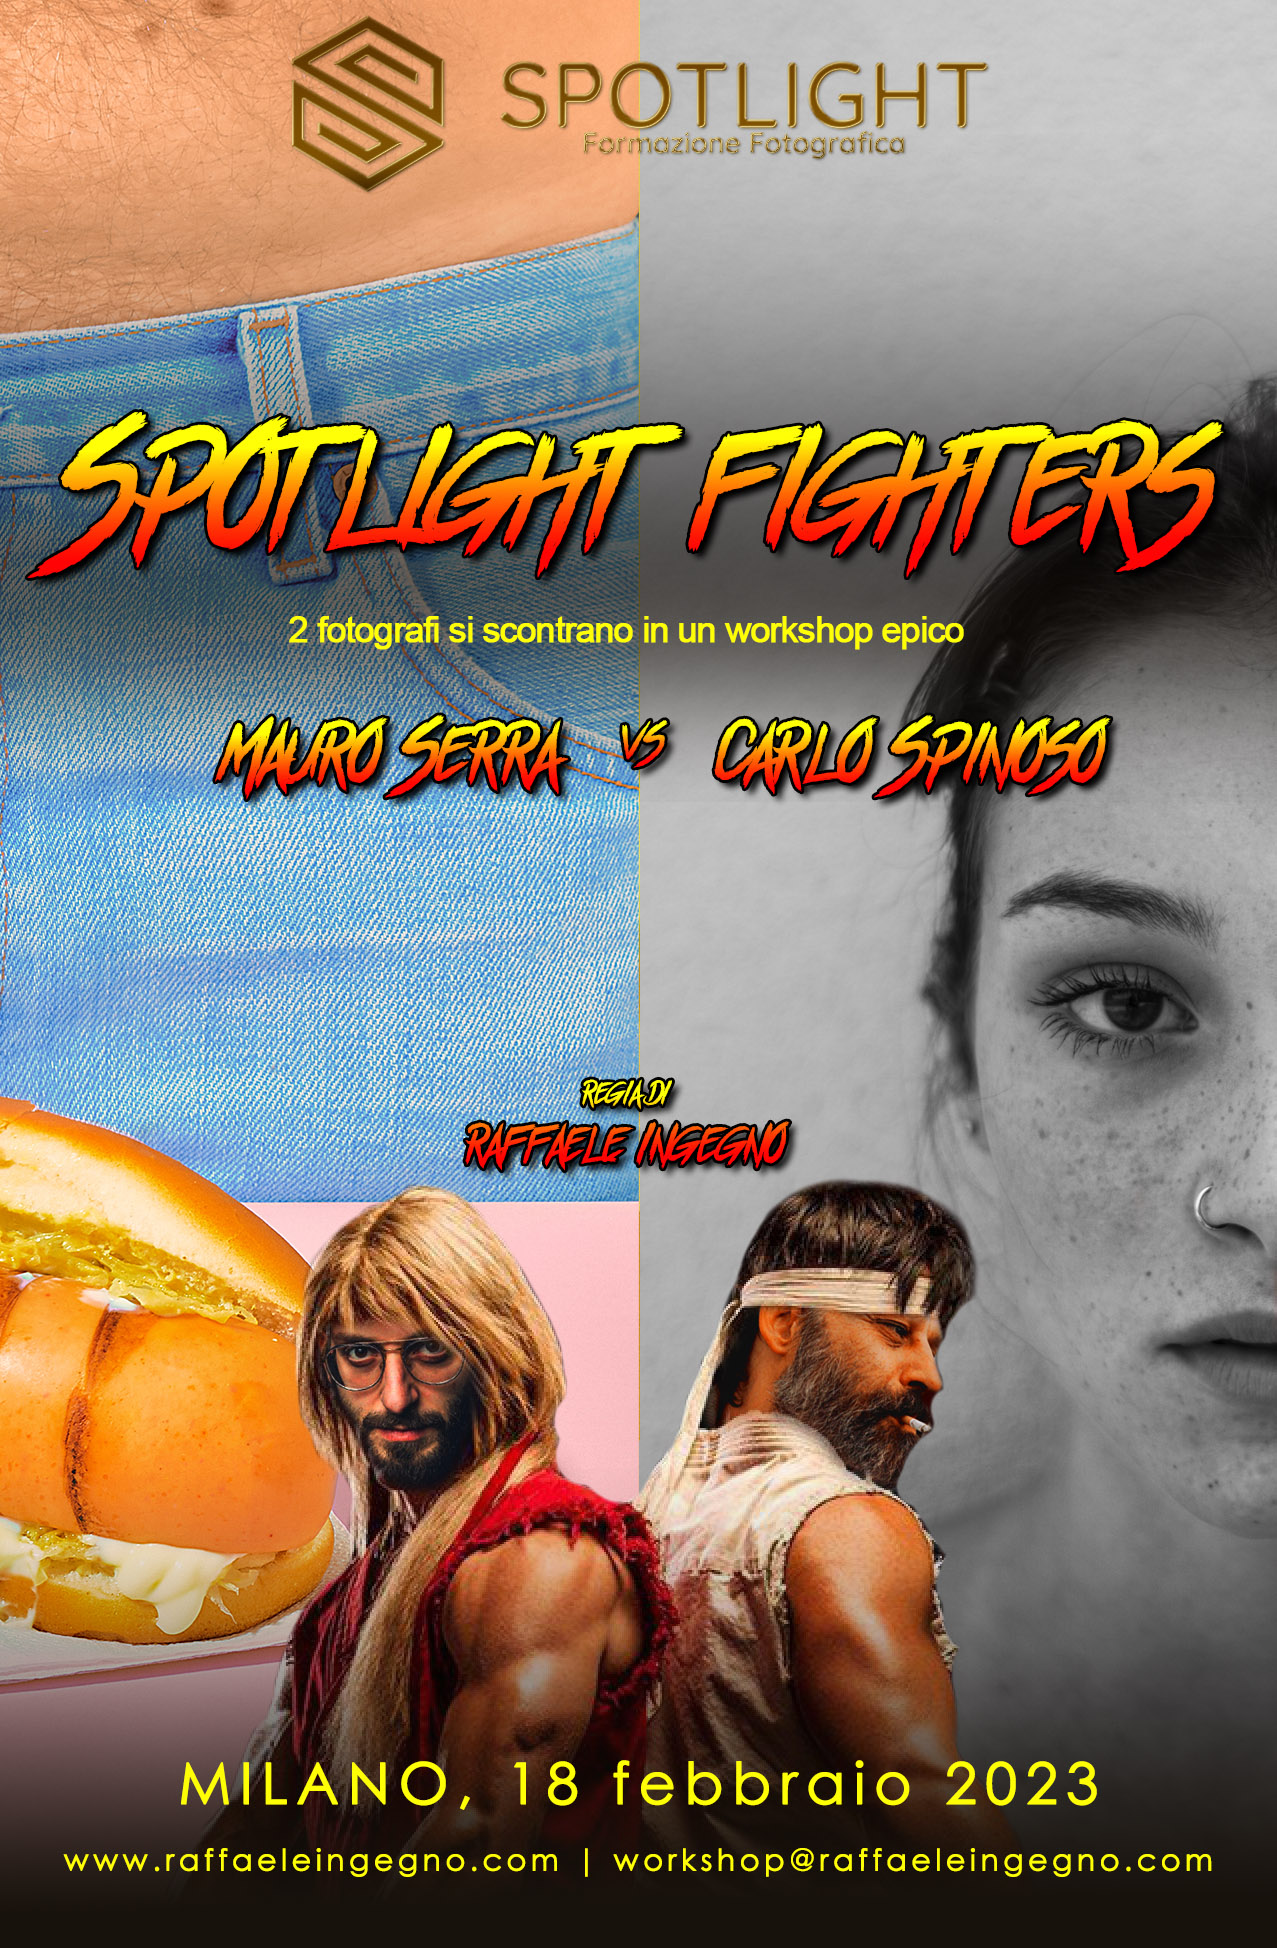 Spotlight Fighters